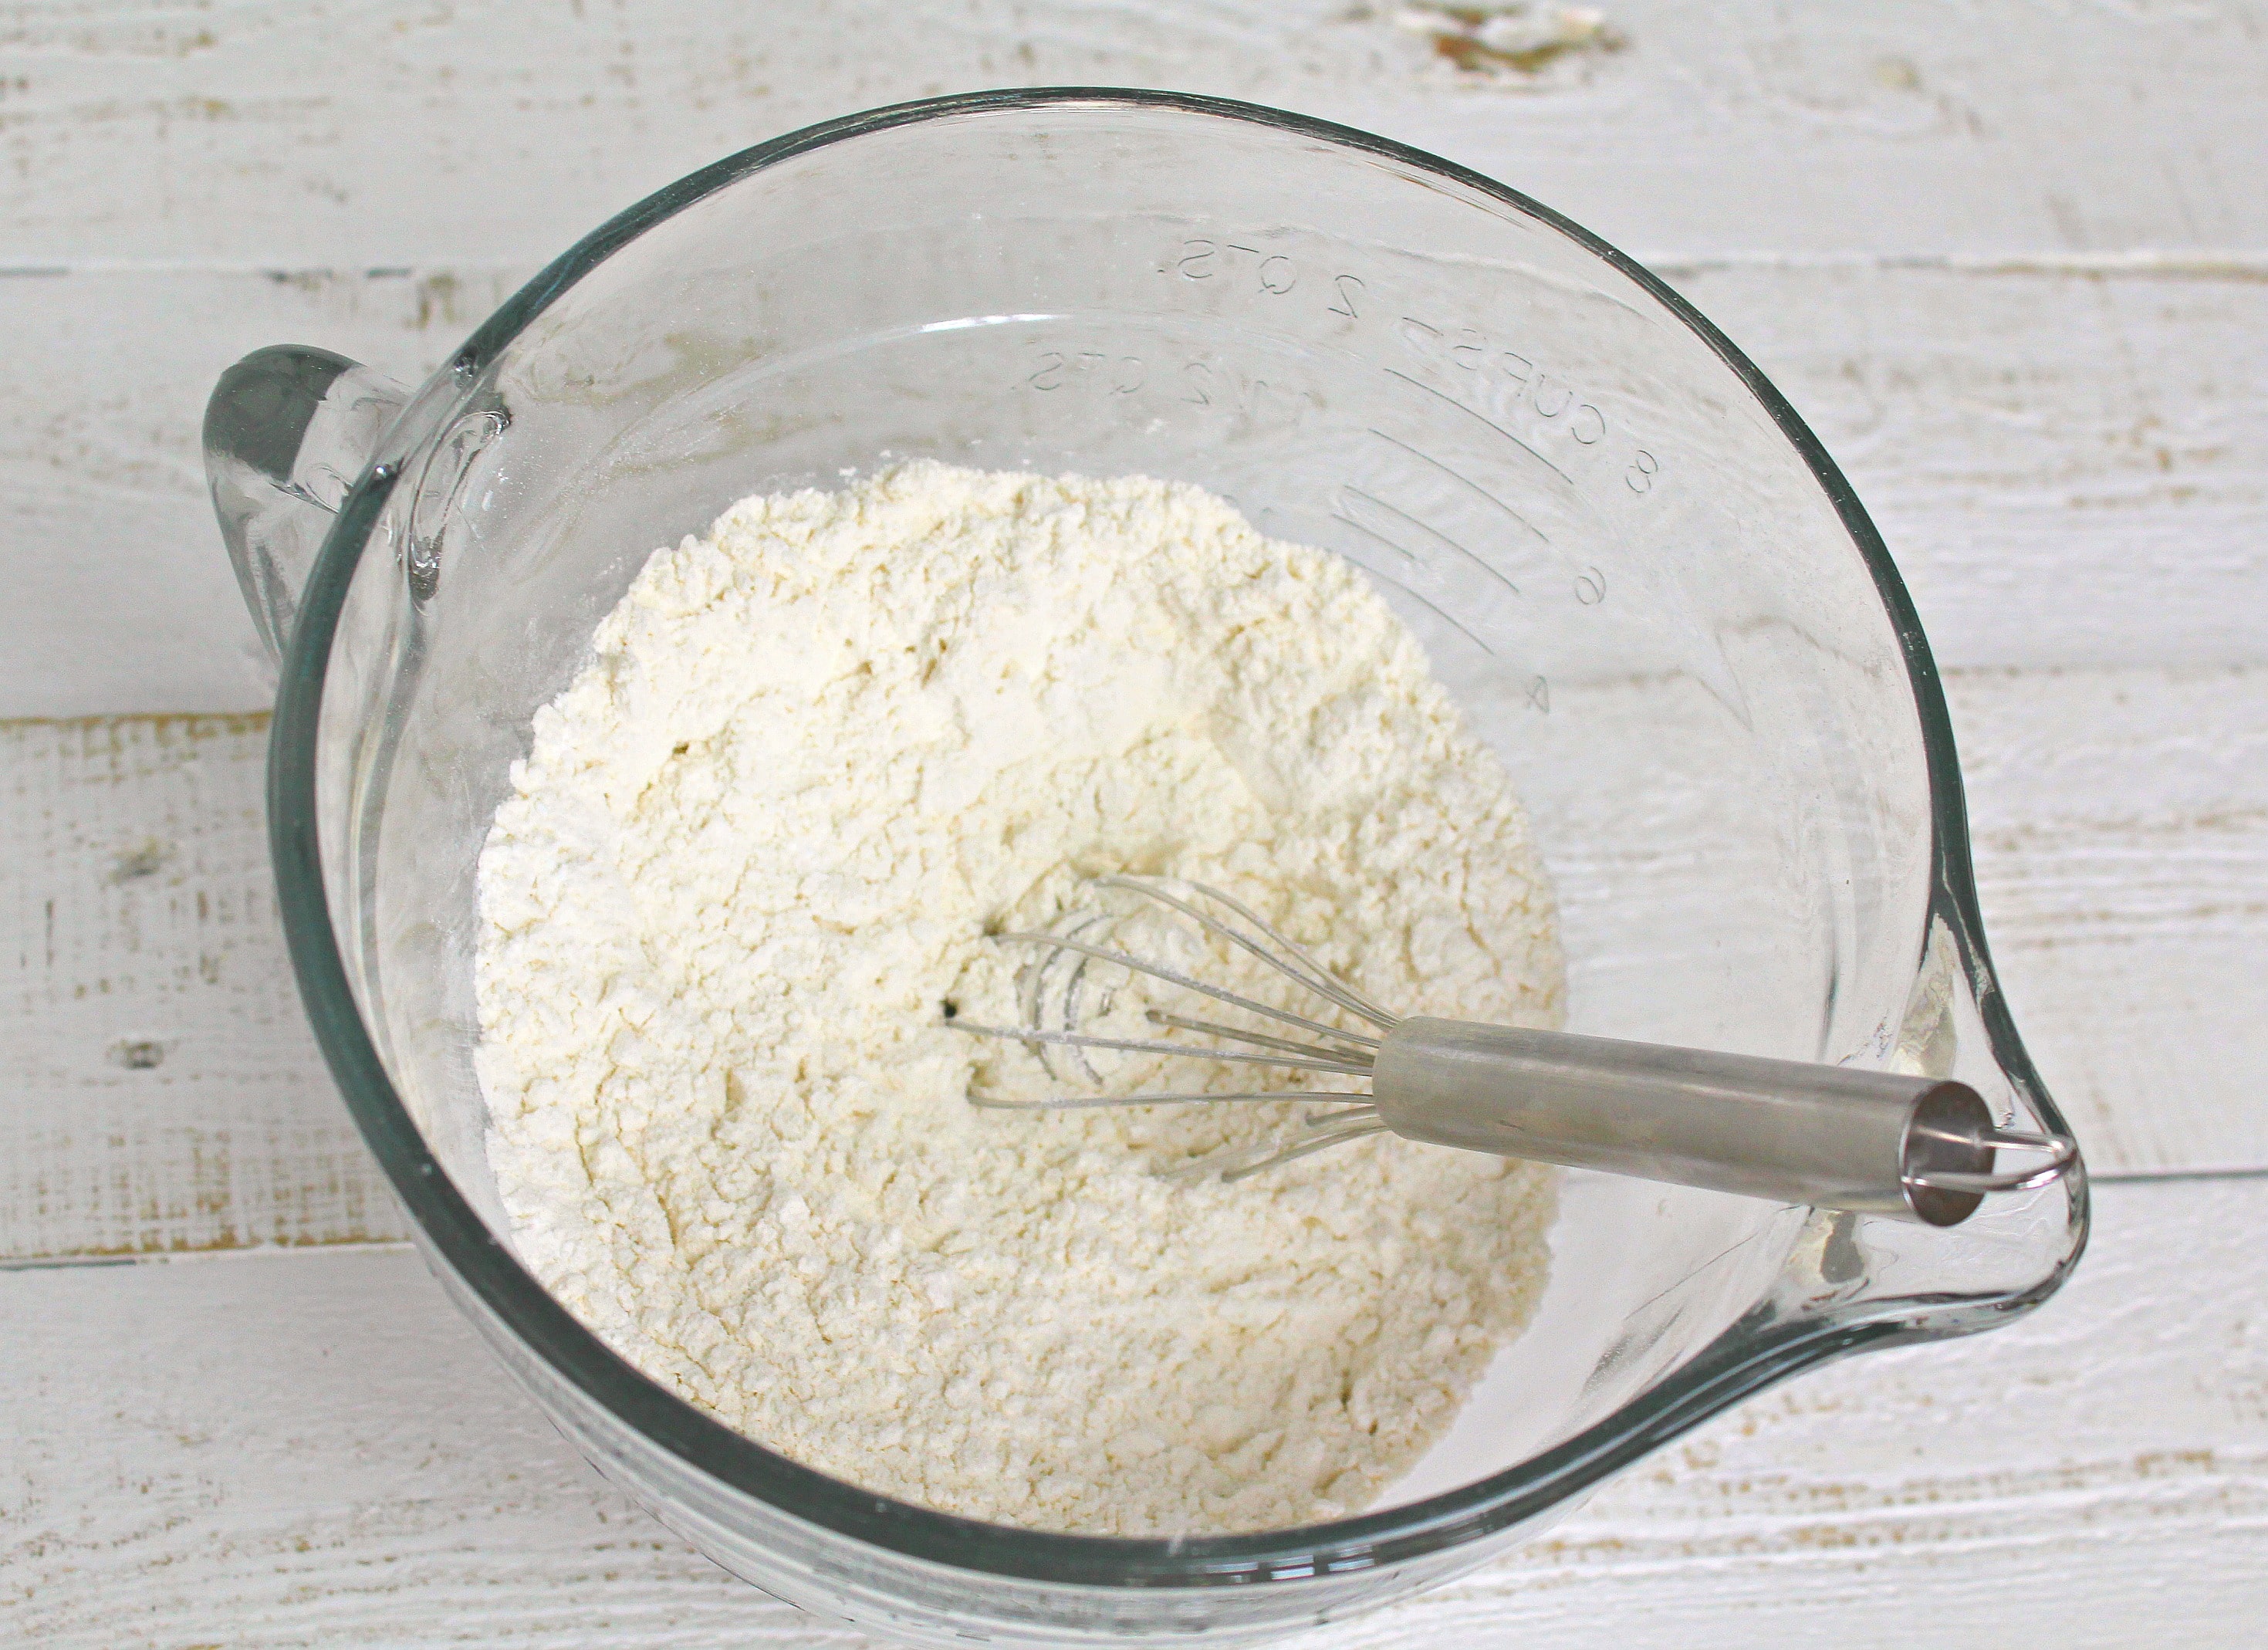 In a large bowl whisk together flour, baking powder, salt.